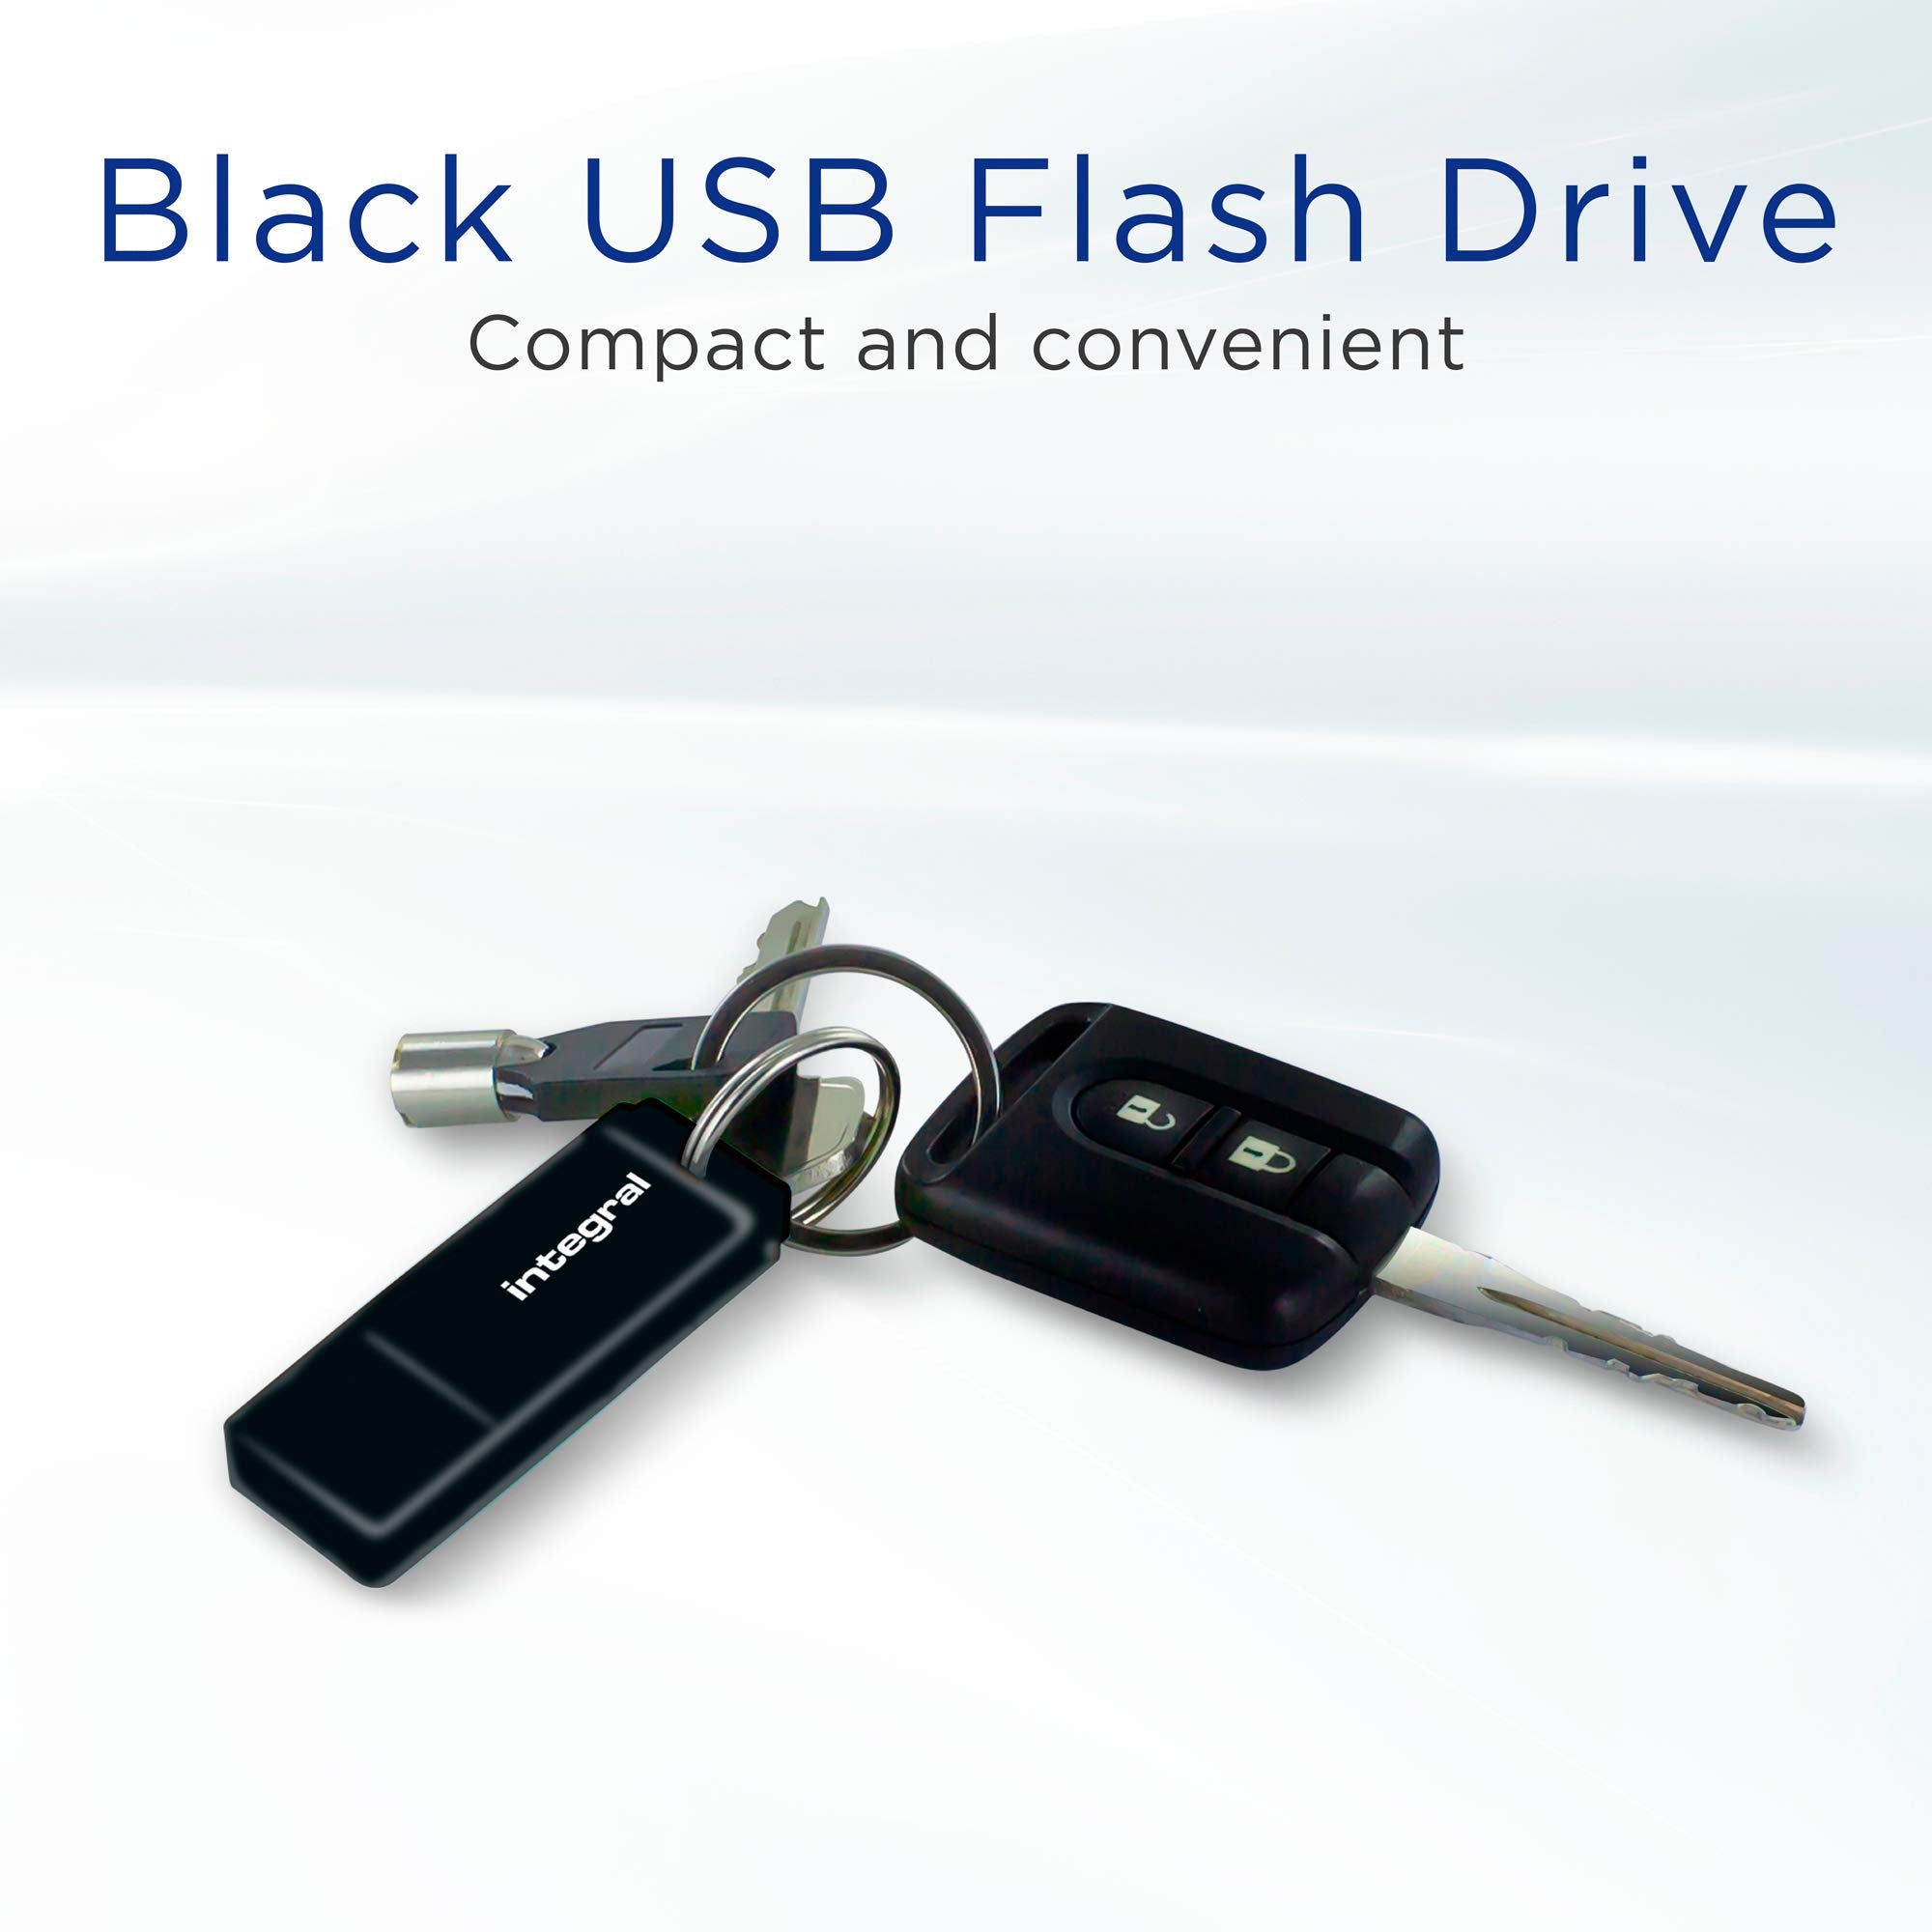 Integral INFD64GBBLK 64GB USB Memory 2.0 Flash Drive